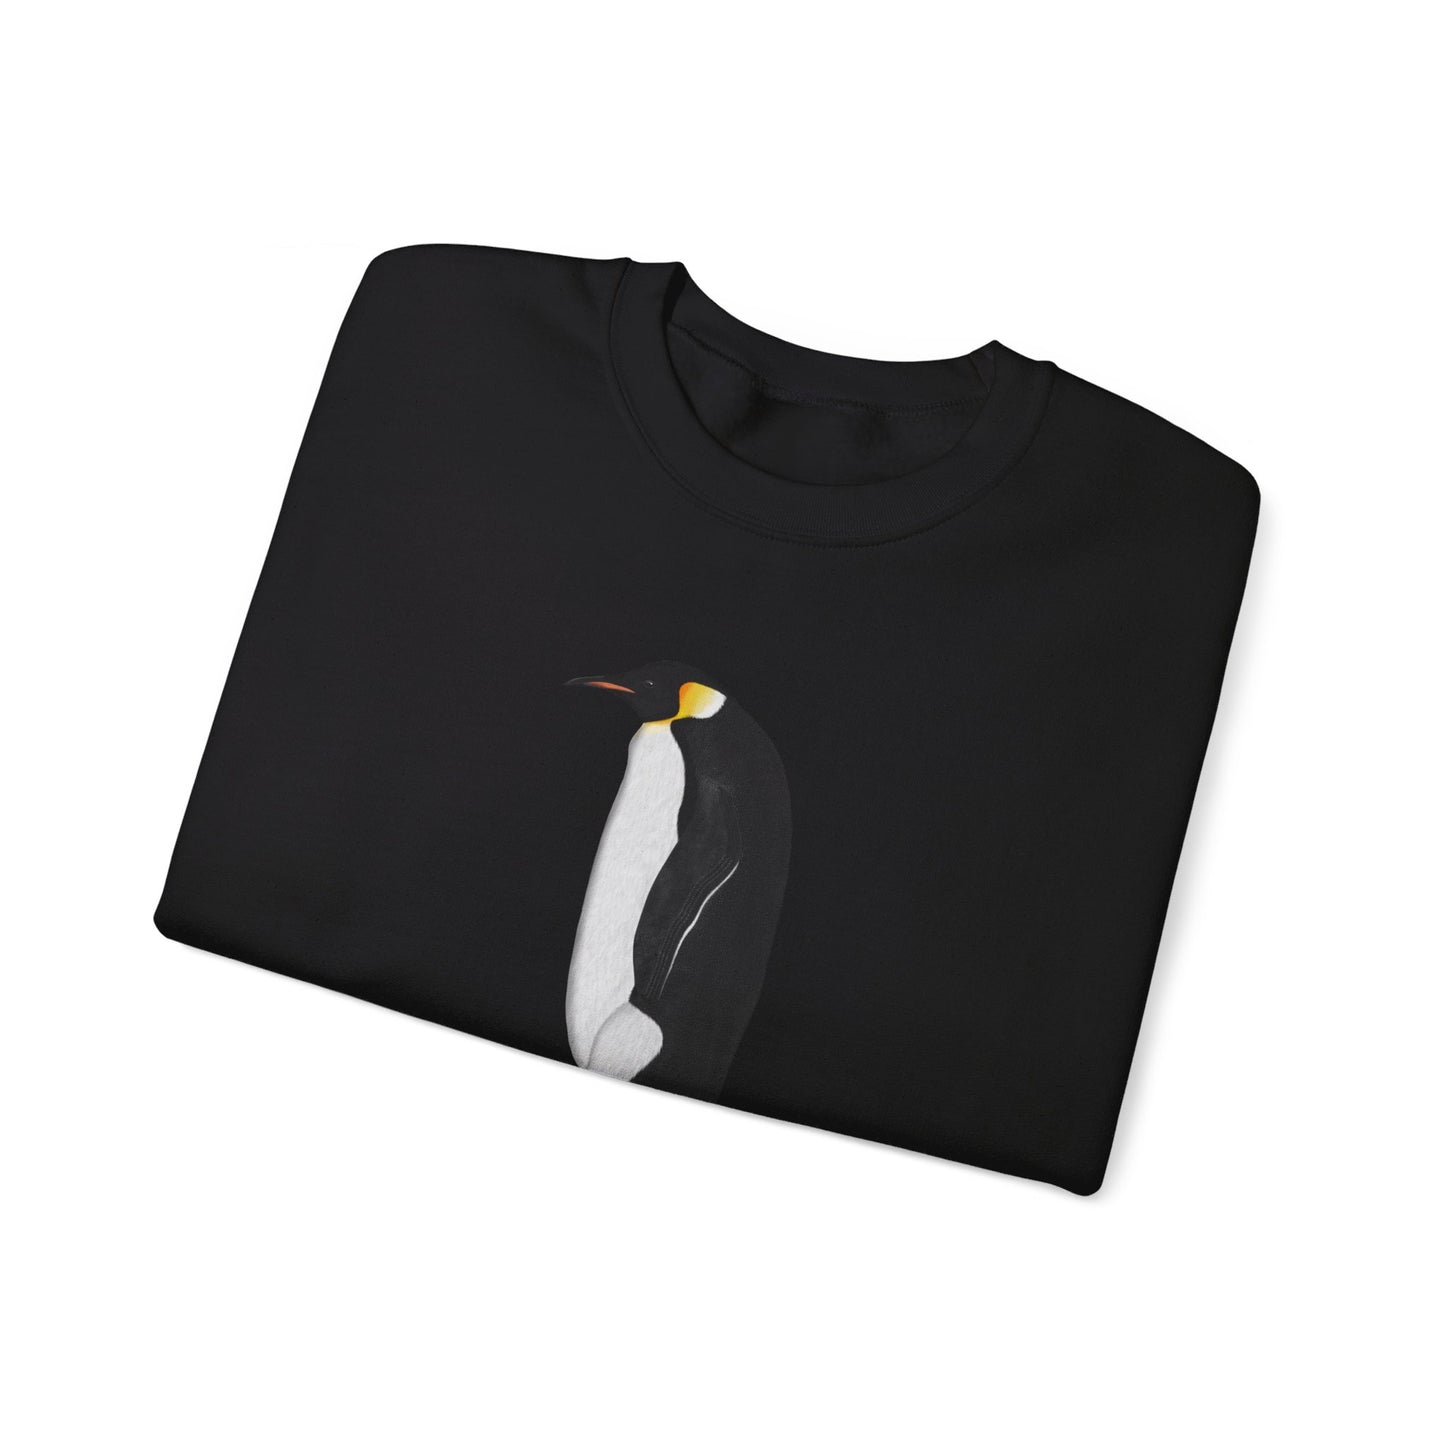 Emperor Penguin Bird Watcher Biologist Crewneck Sweatshirt